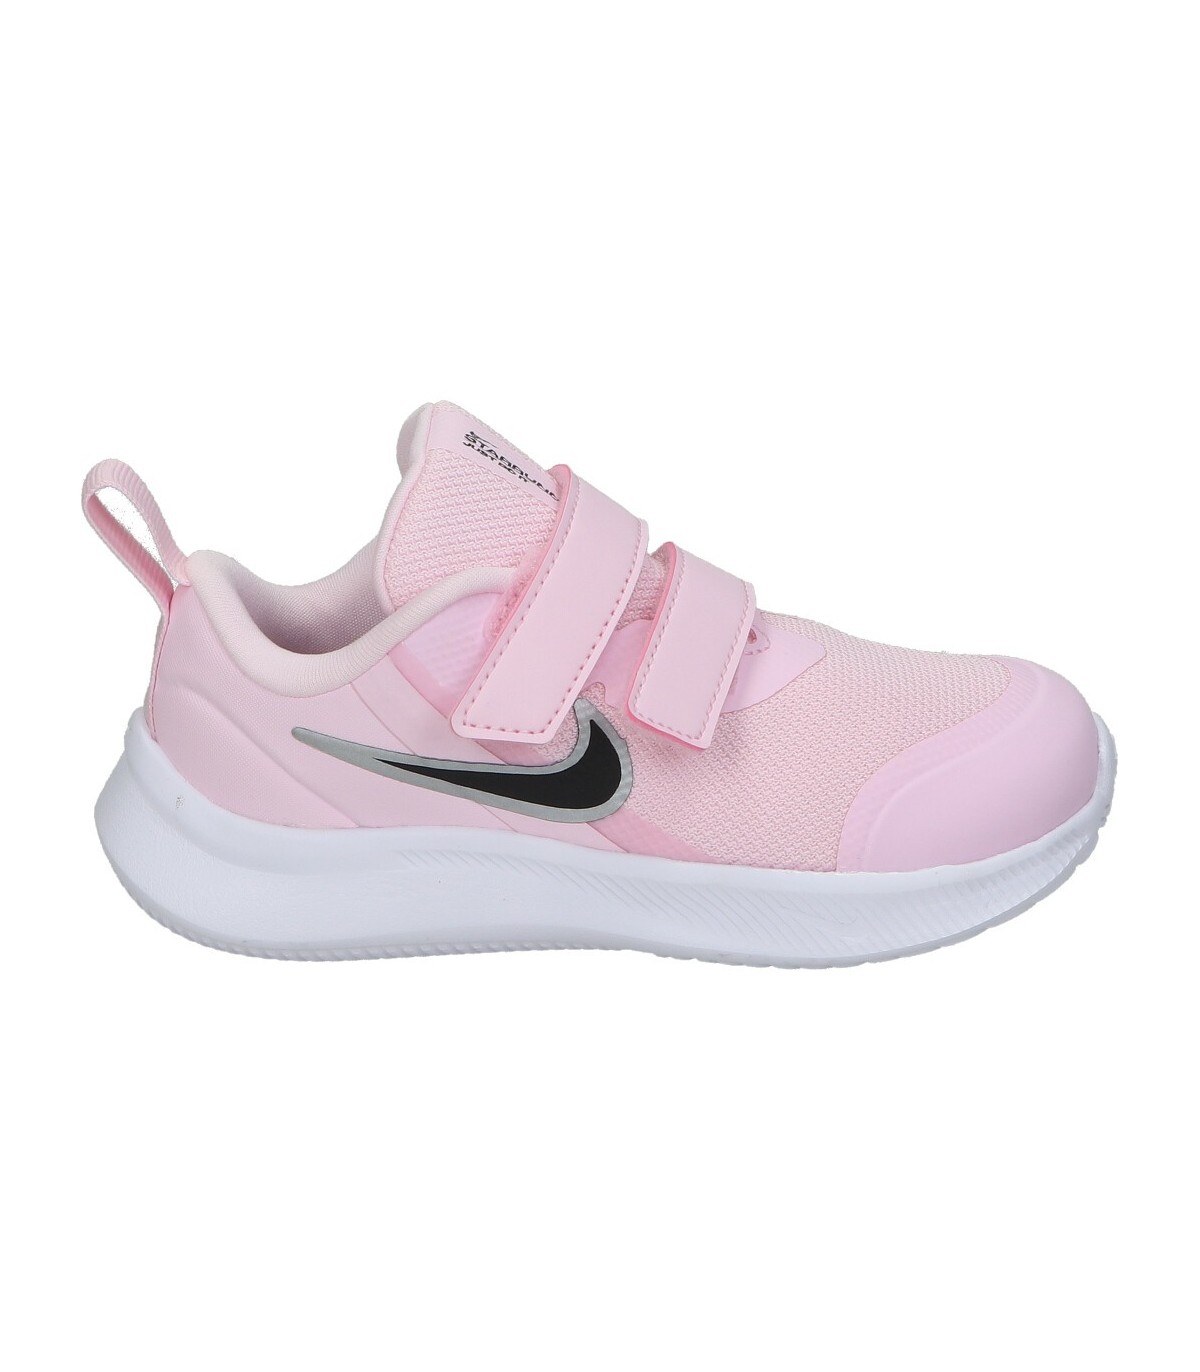 Zapatillas rosas para niña Nike Star 3 online en MEGACALZADO